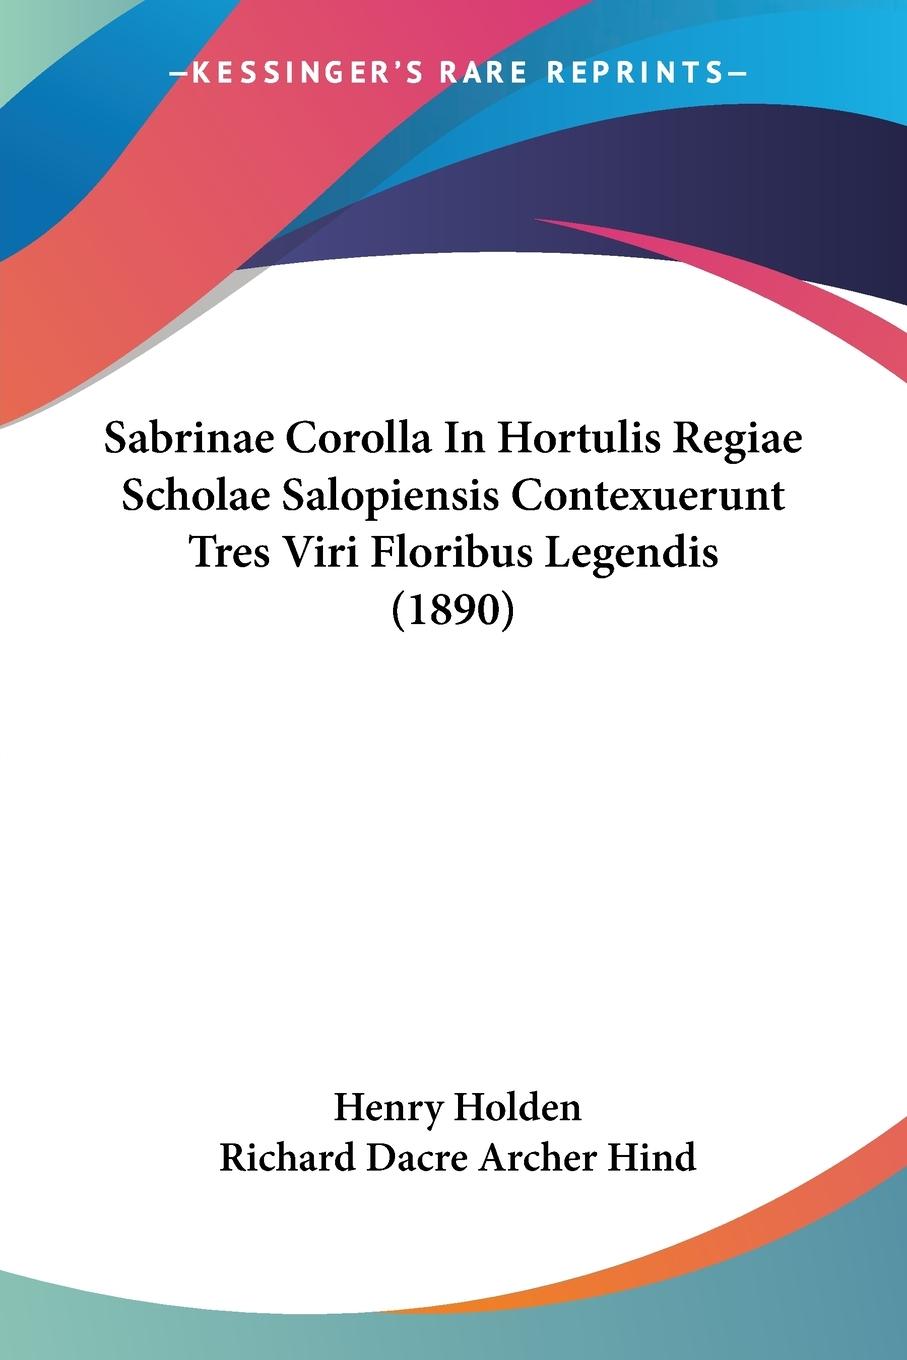 Sabrinae Corolla In Hortulis Regiae Scholae Salopiensis Contexuerunt Tres Viri Floribus Legendis (1890) - Holden, Henry Hind, Richard Dacre Archer